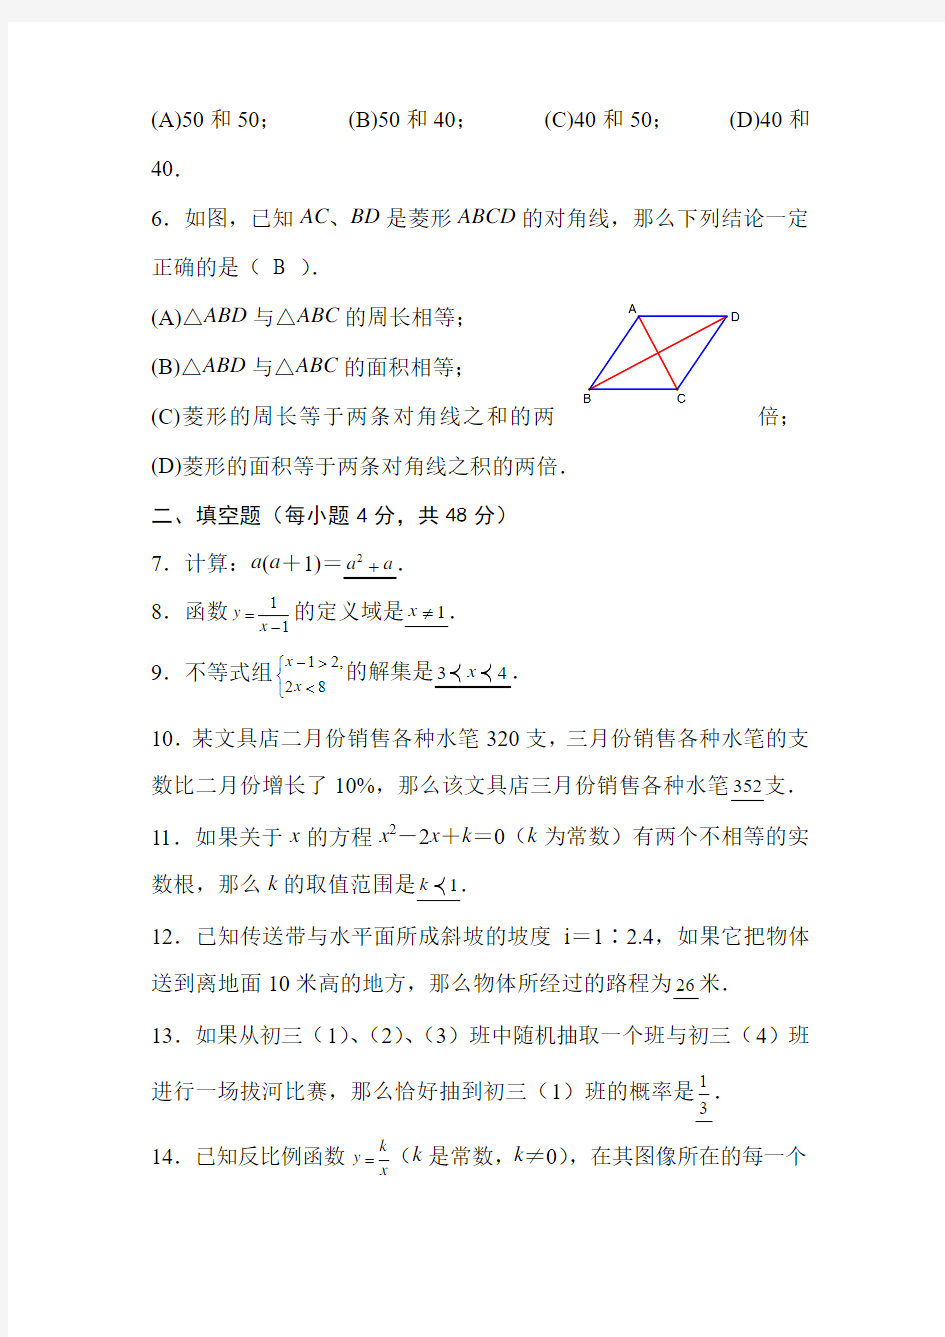 上海2014年初中数学中考试卷(含答案)